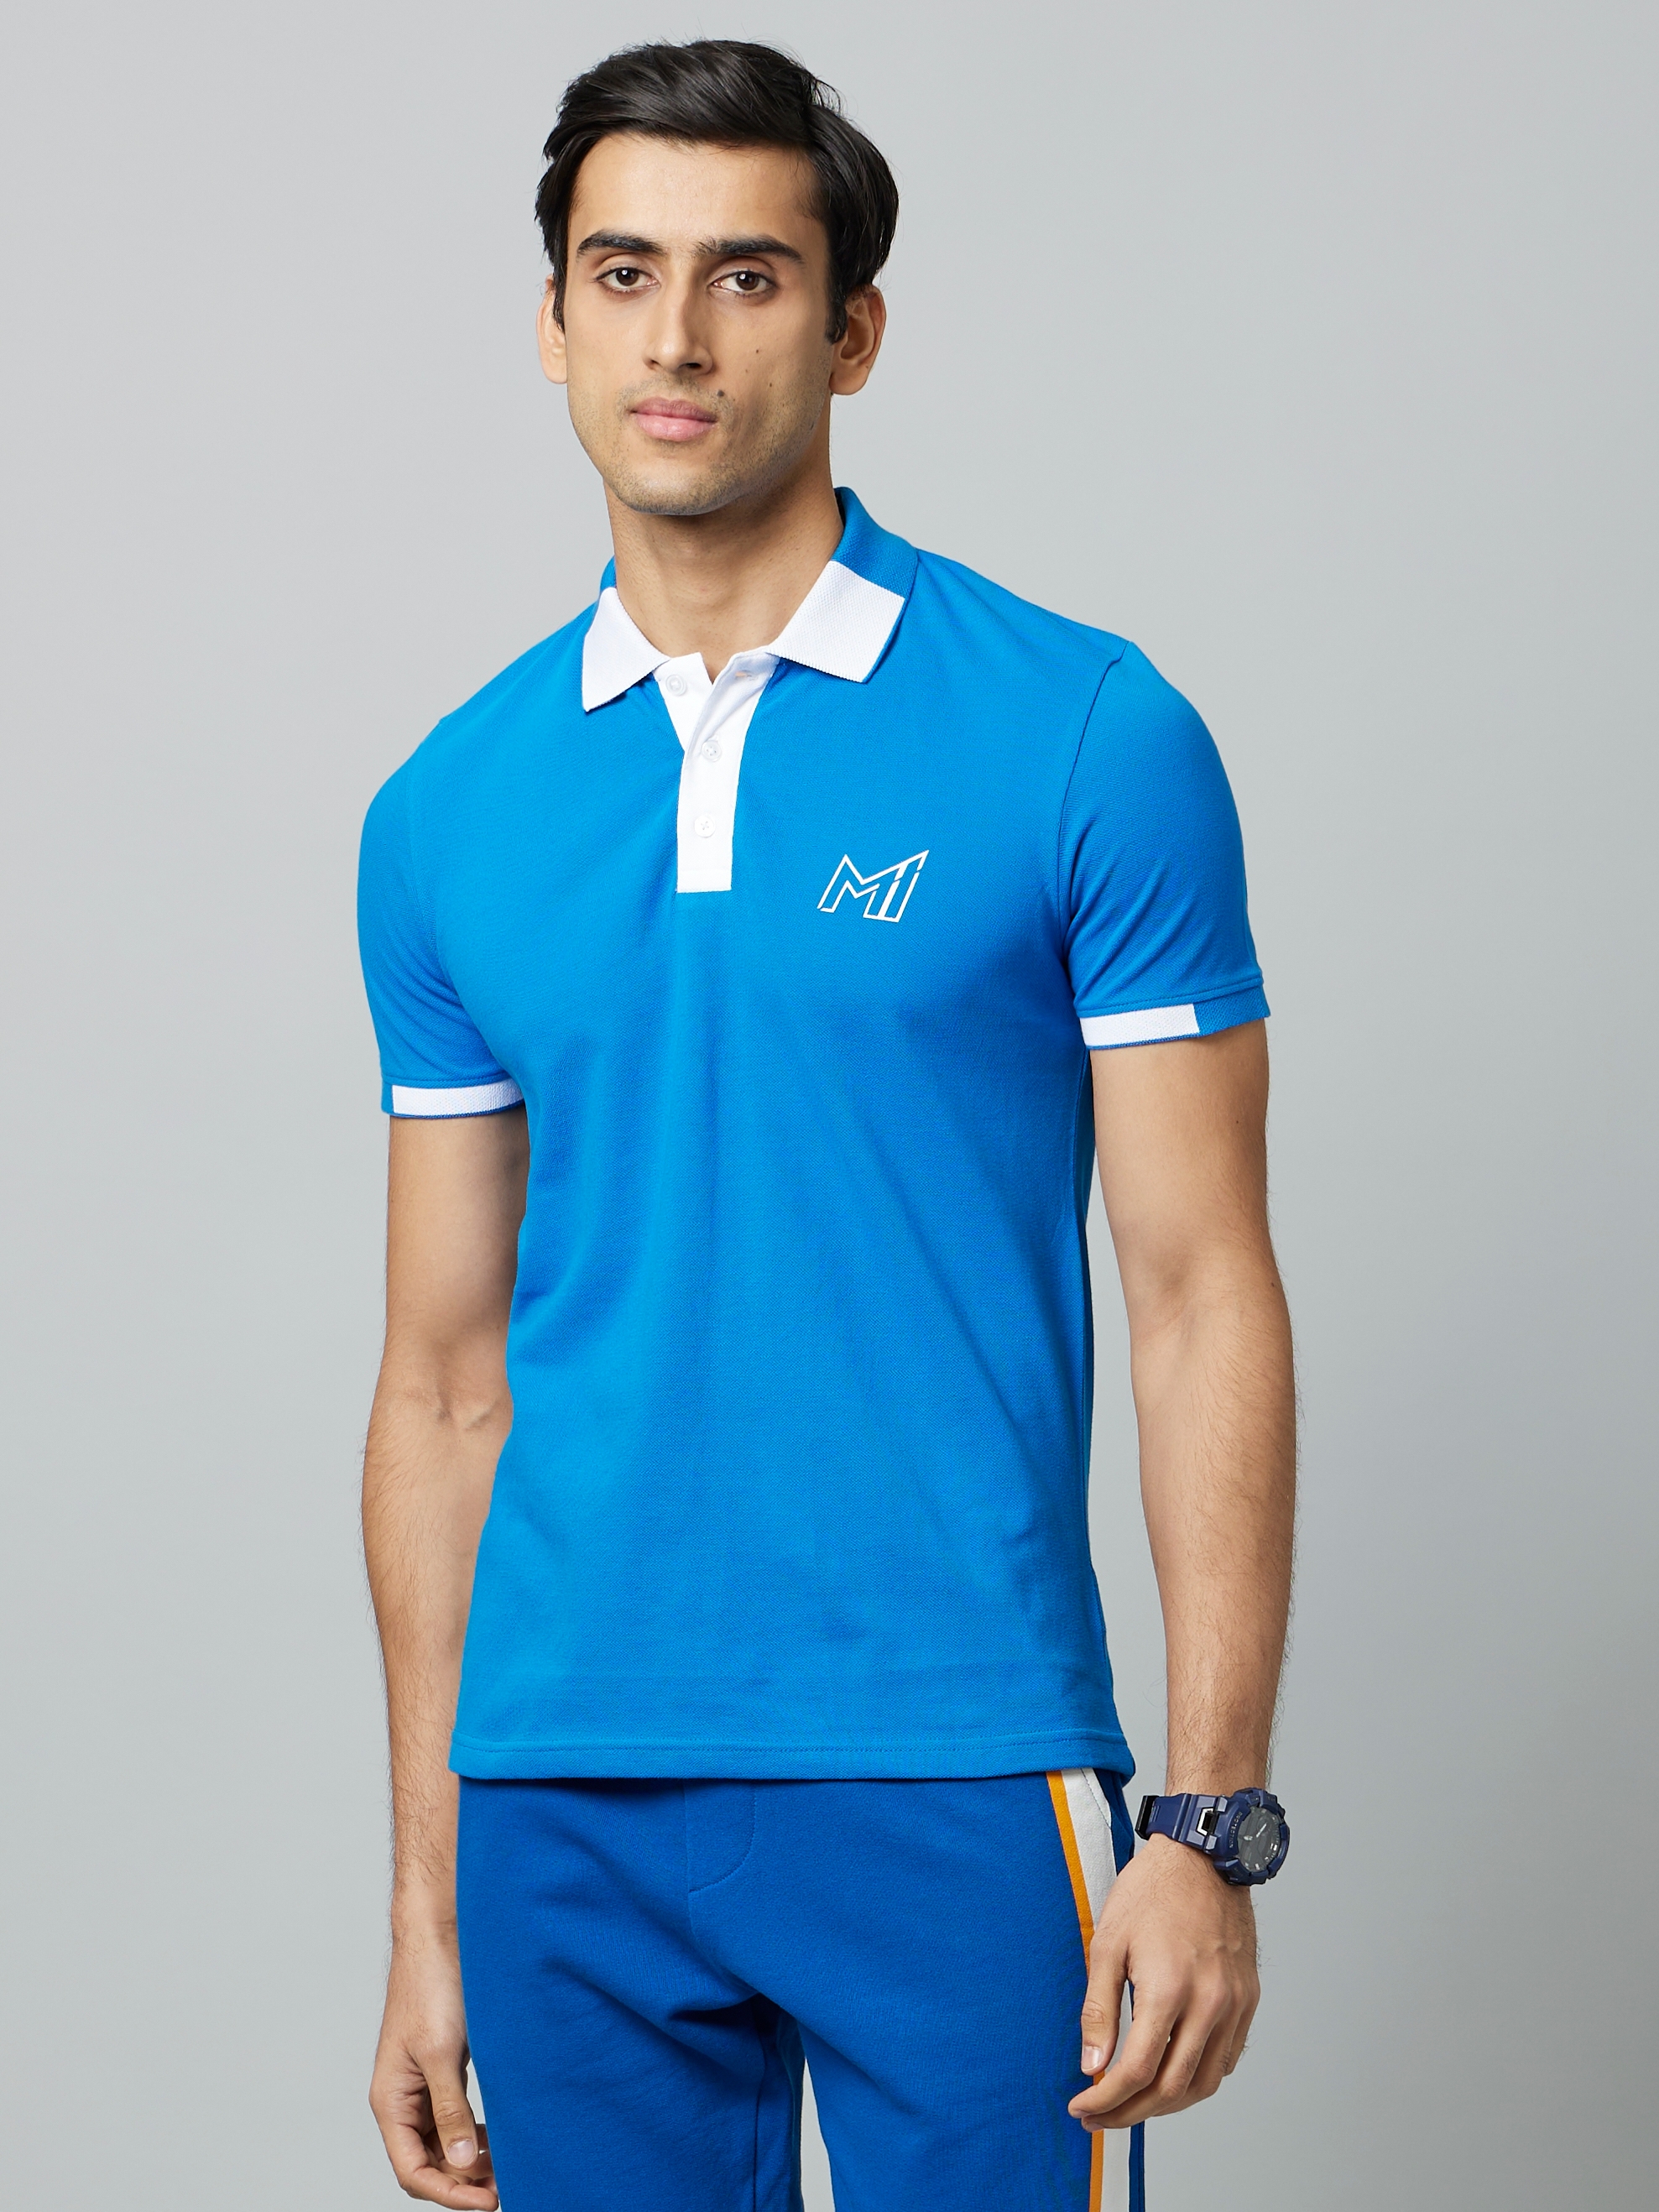 Celio Men Mumbai Indians Colourblocked Blue Short Sleeves Polo